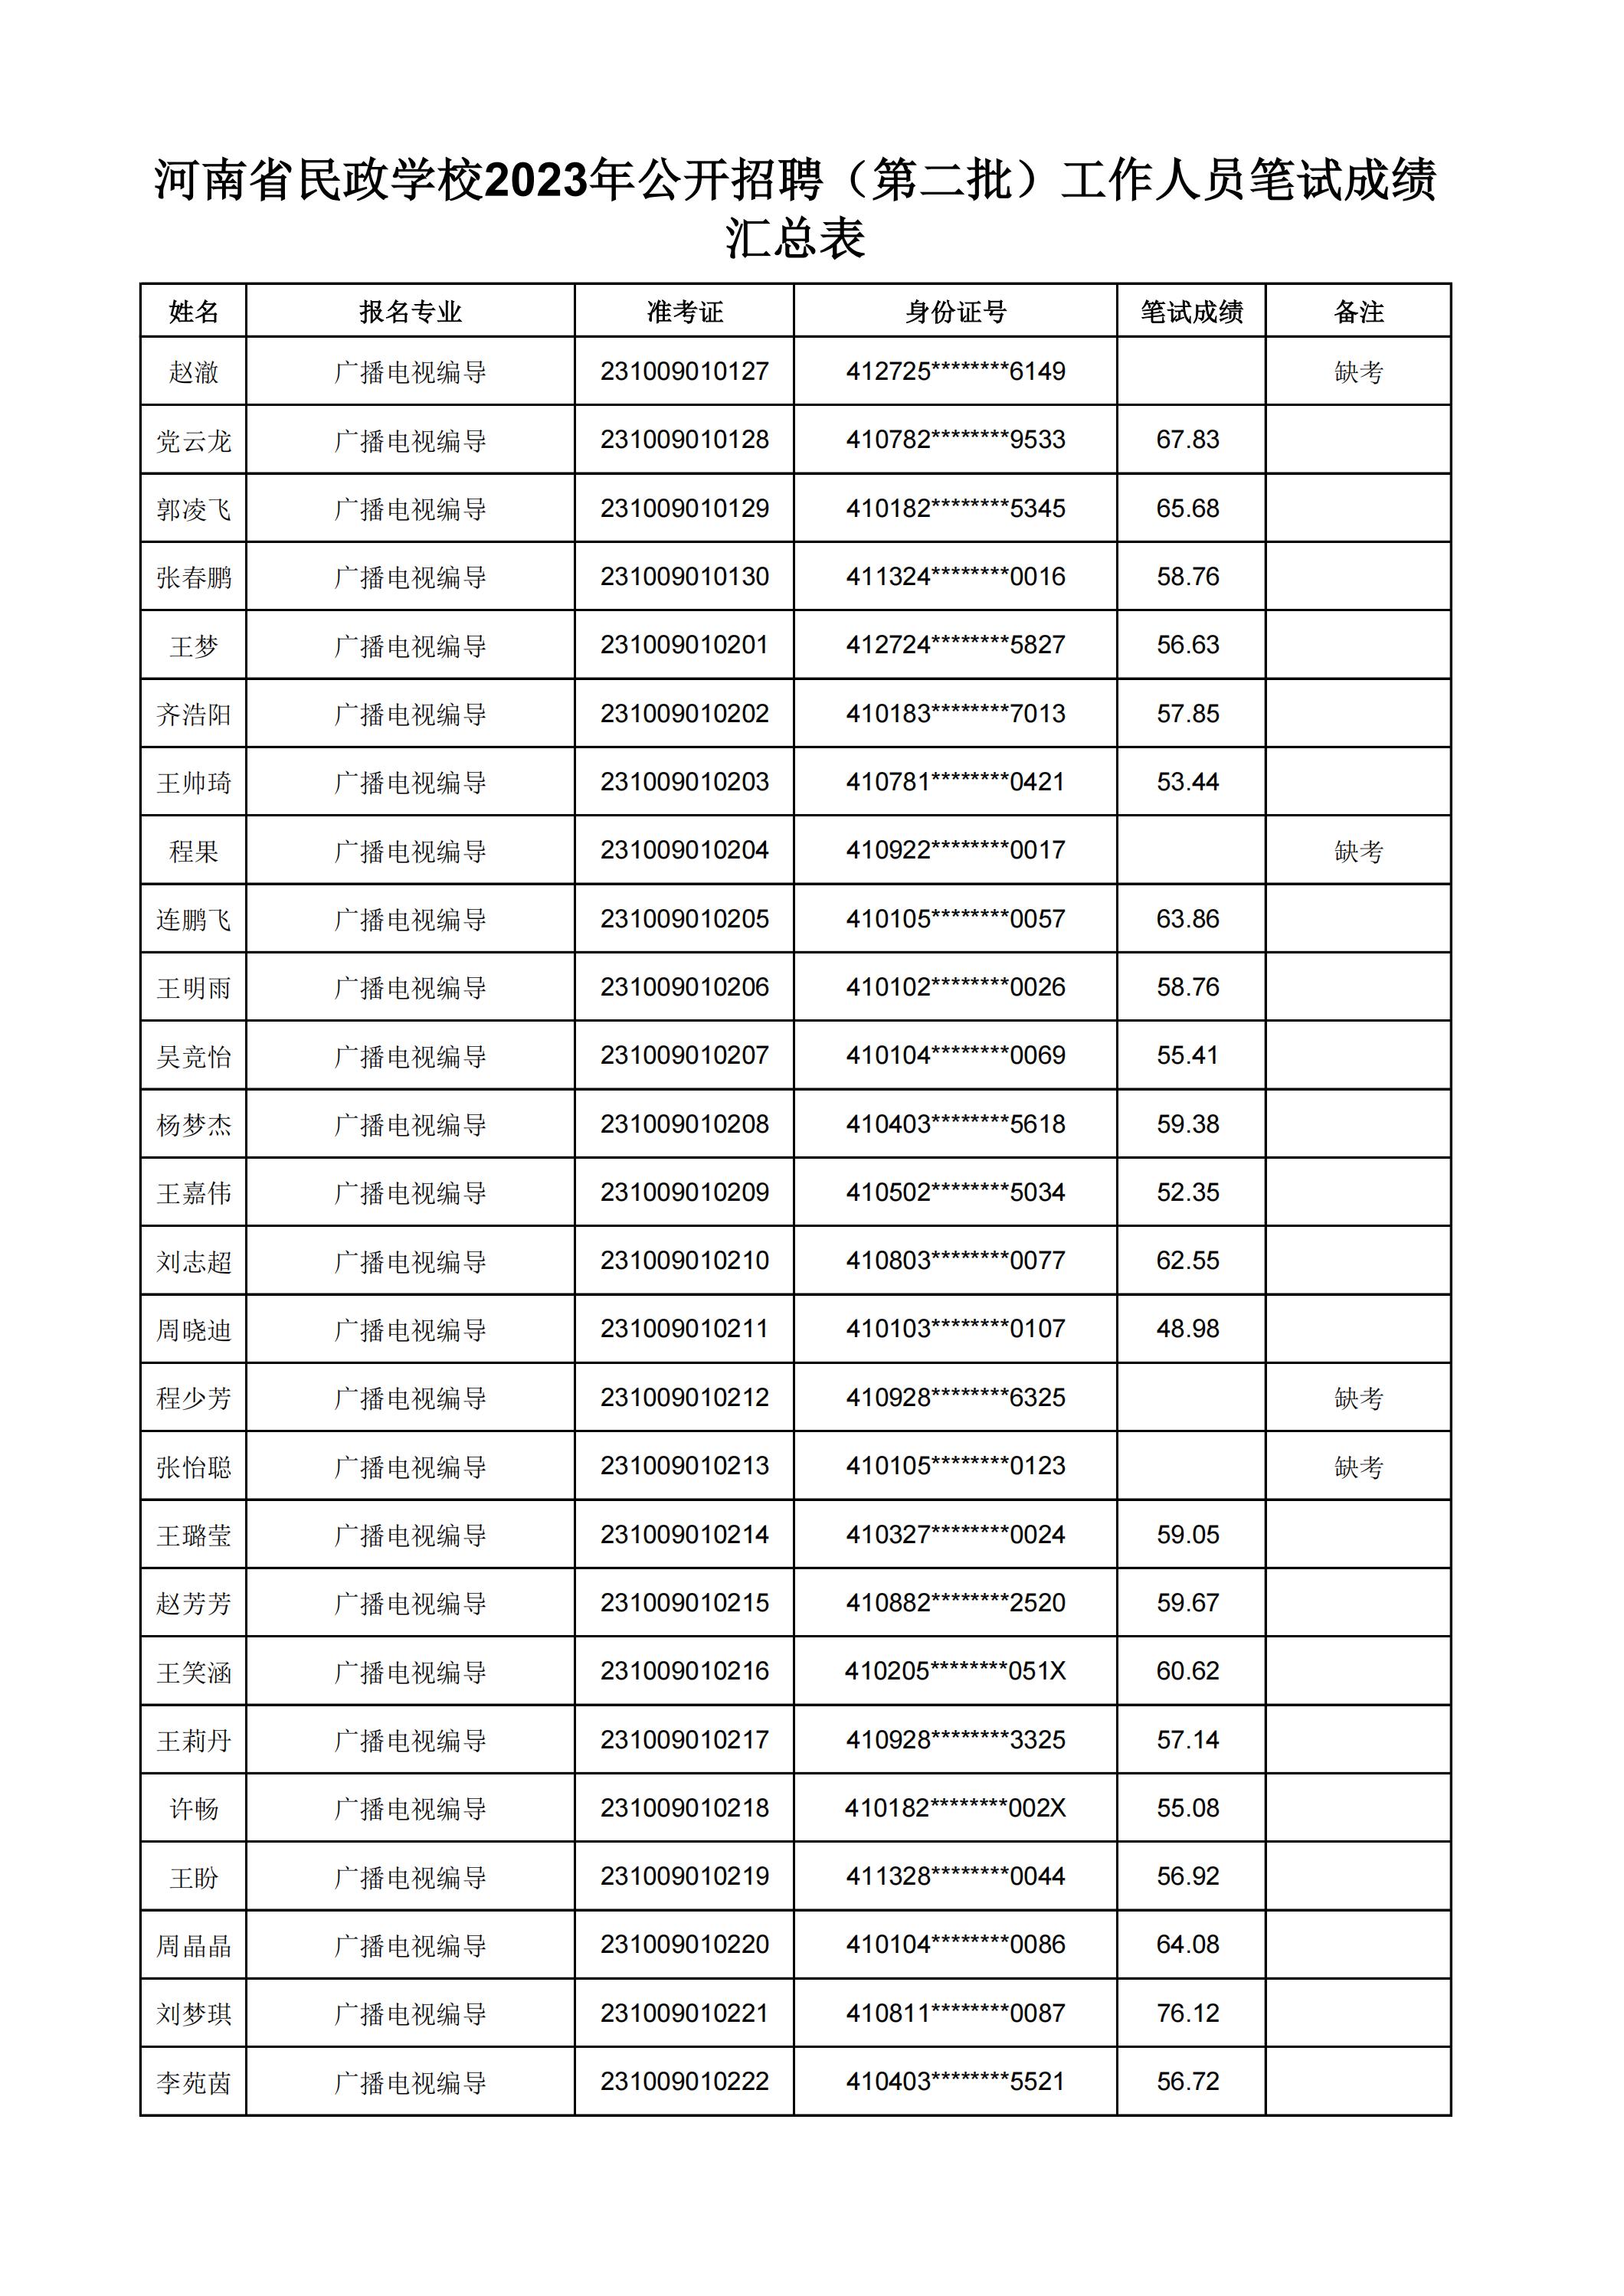 河南省民政学校2023年公开招聘（第二批）工作人员笔试成绩汇总表(2)_01.jpg